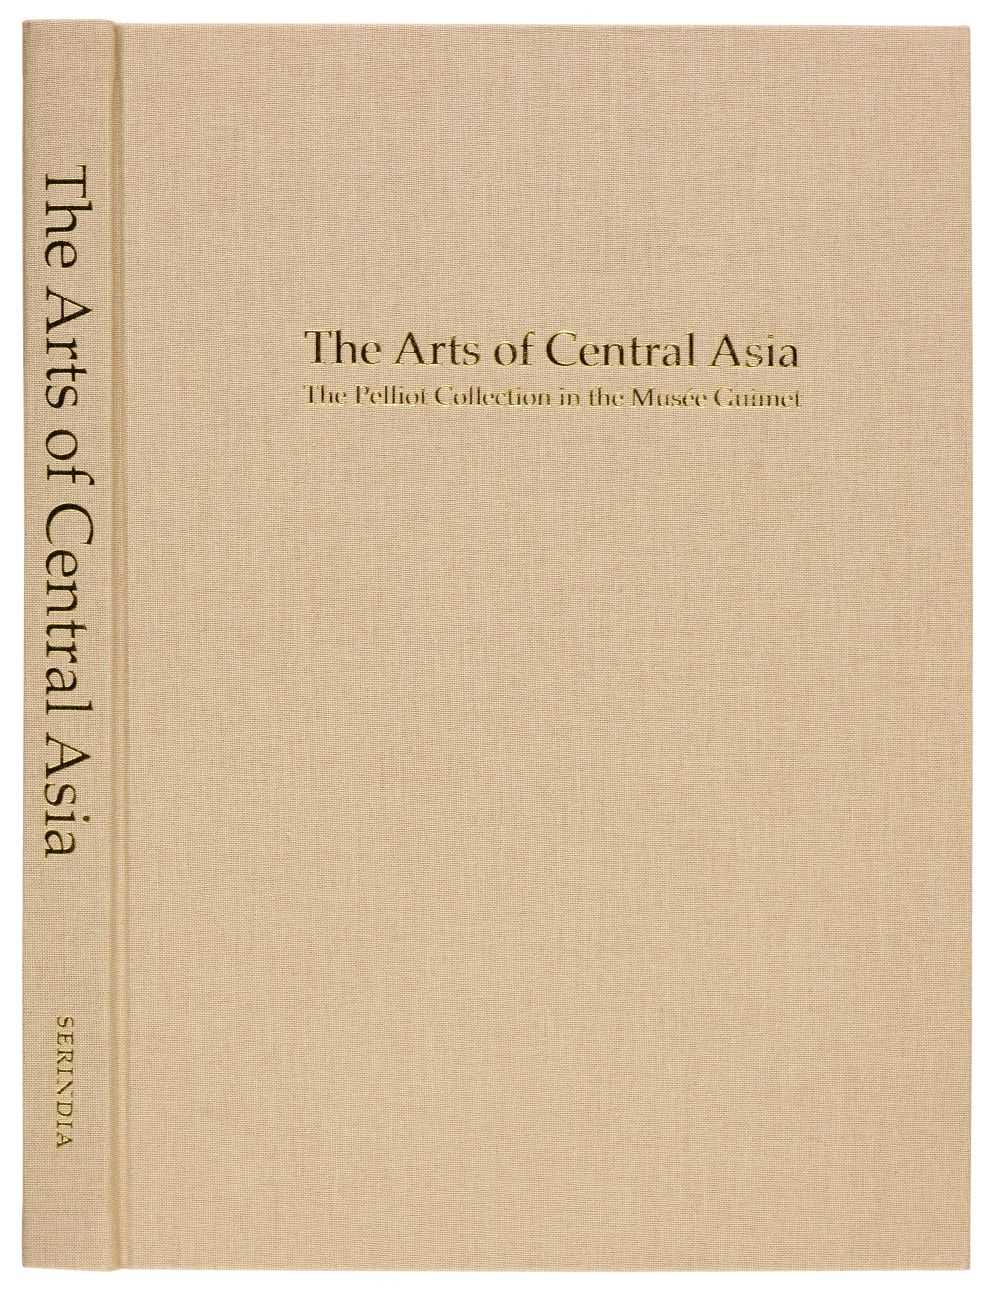 Lot 61 - Giès (Jacques, editor). Les arts de l'Asie centrale, 2 volumes, 1995